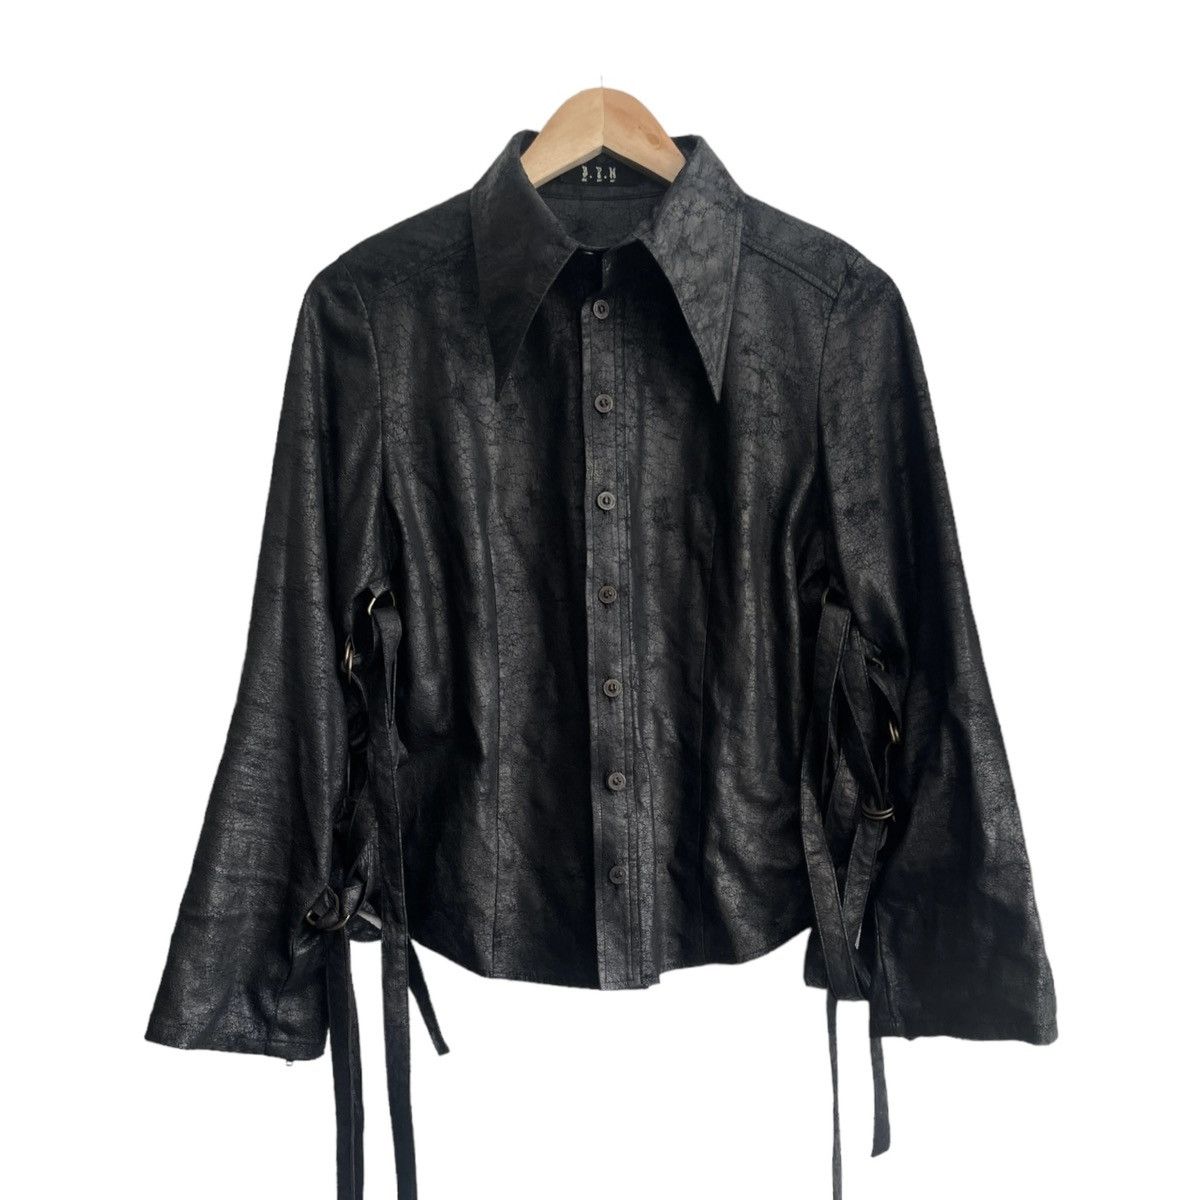 Pre-owned Vintage Bpn Leather Bondage Shirt In Black